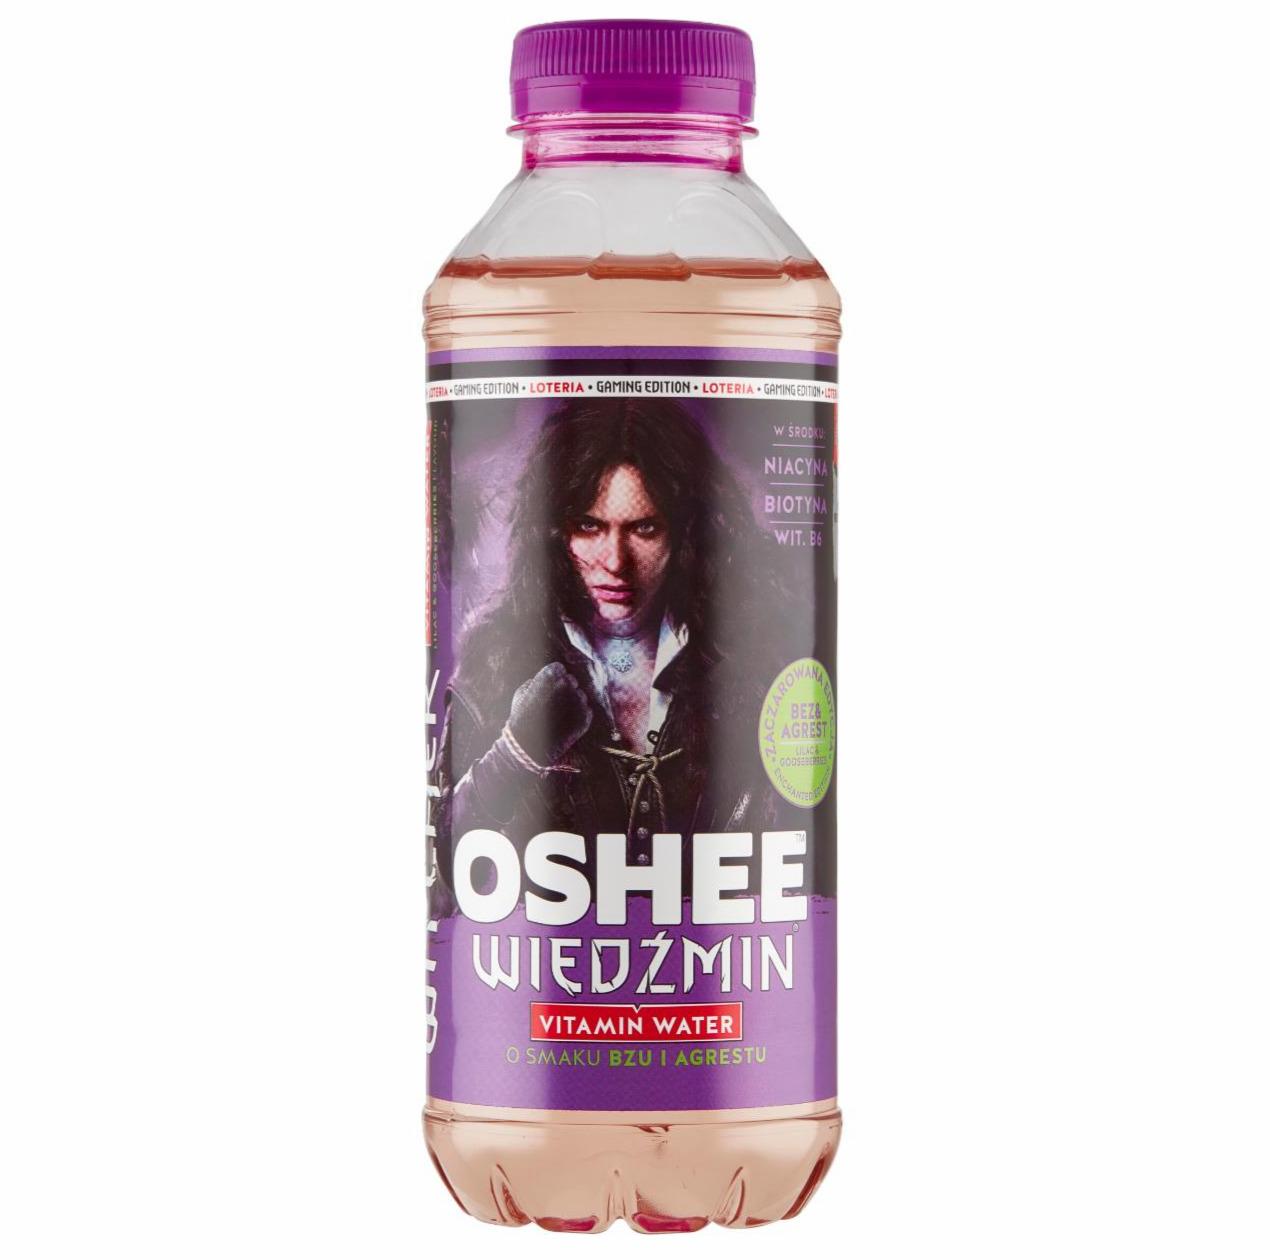 Zdjęcia - Oshee Wiedźmin Vitamin Water Napój niegazowany o smaku bzu i agrestu 555 ml